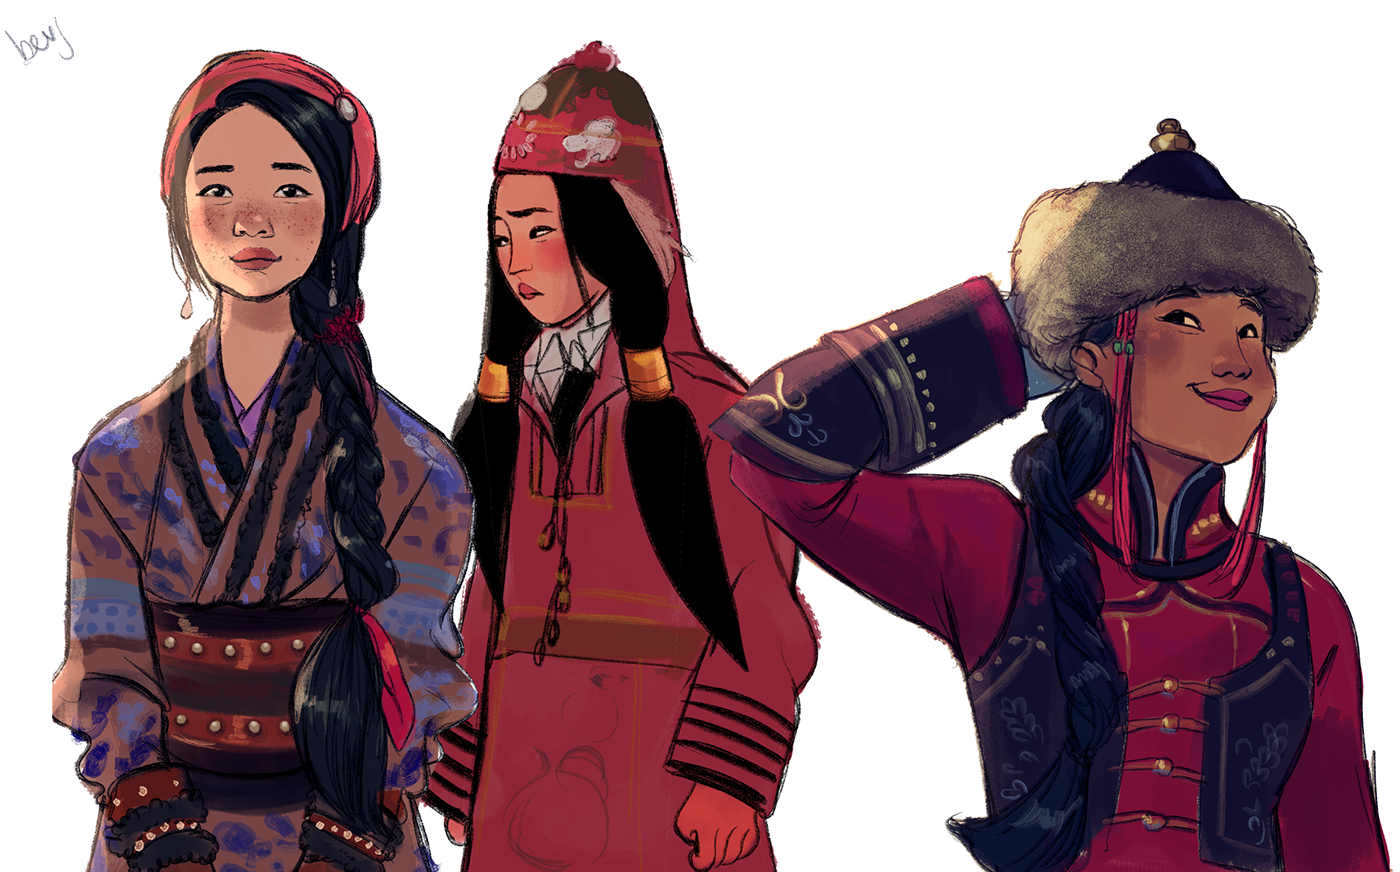 Kazakh me. Казахские арты. Монгольские женщины современные. Казахский персонаж. Казахские иллюстрации.